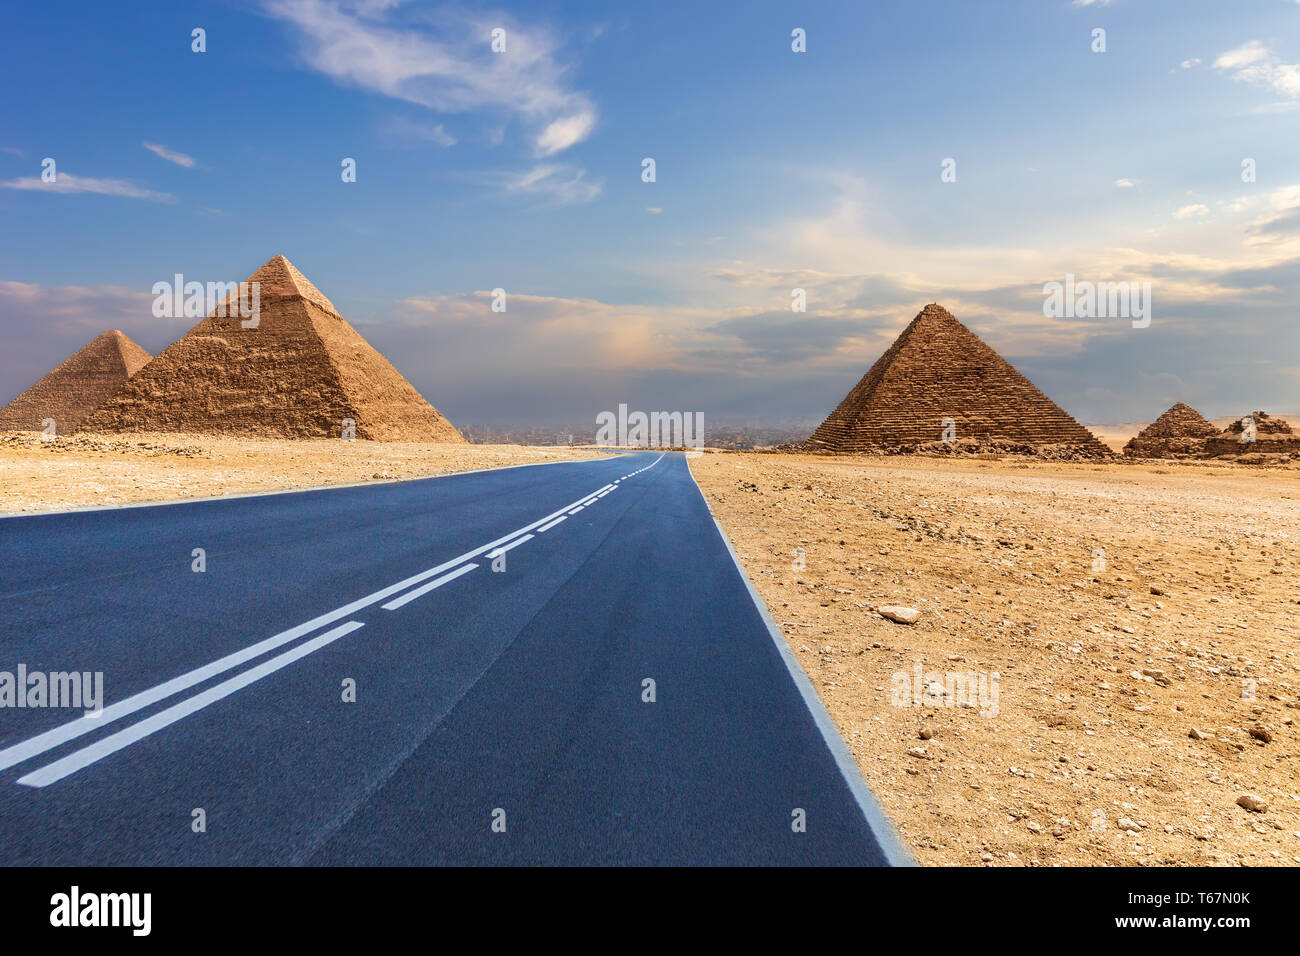 Las pirámides de Giza y un camino en el desierto, Egipto, ningún pueblo. Foto de stock